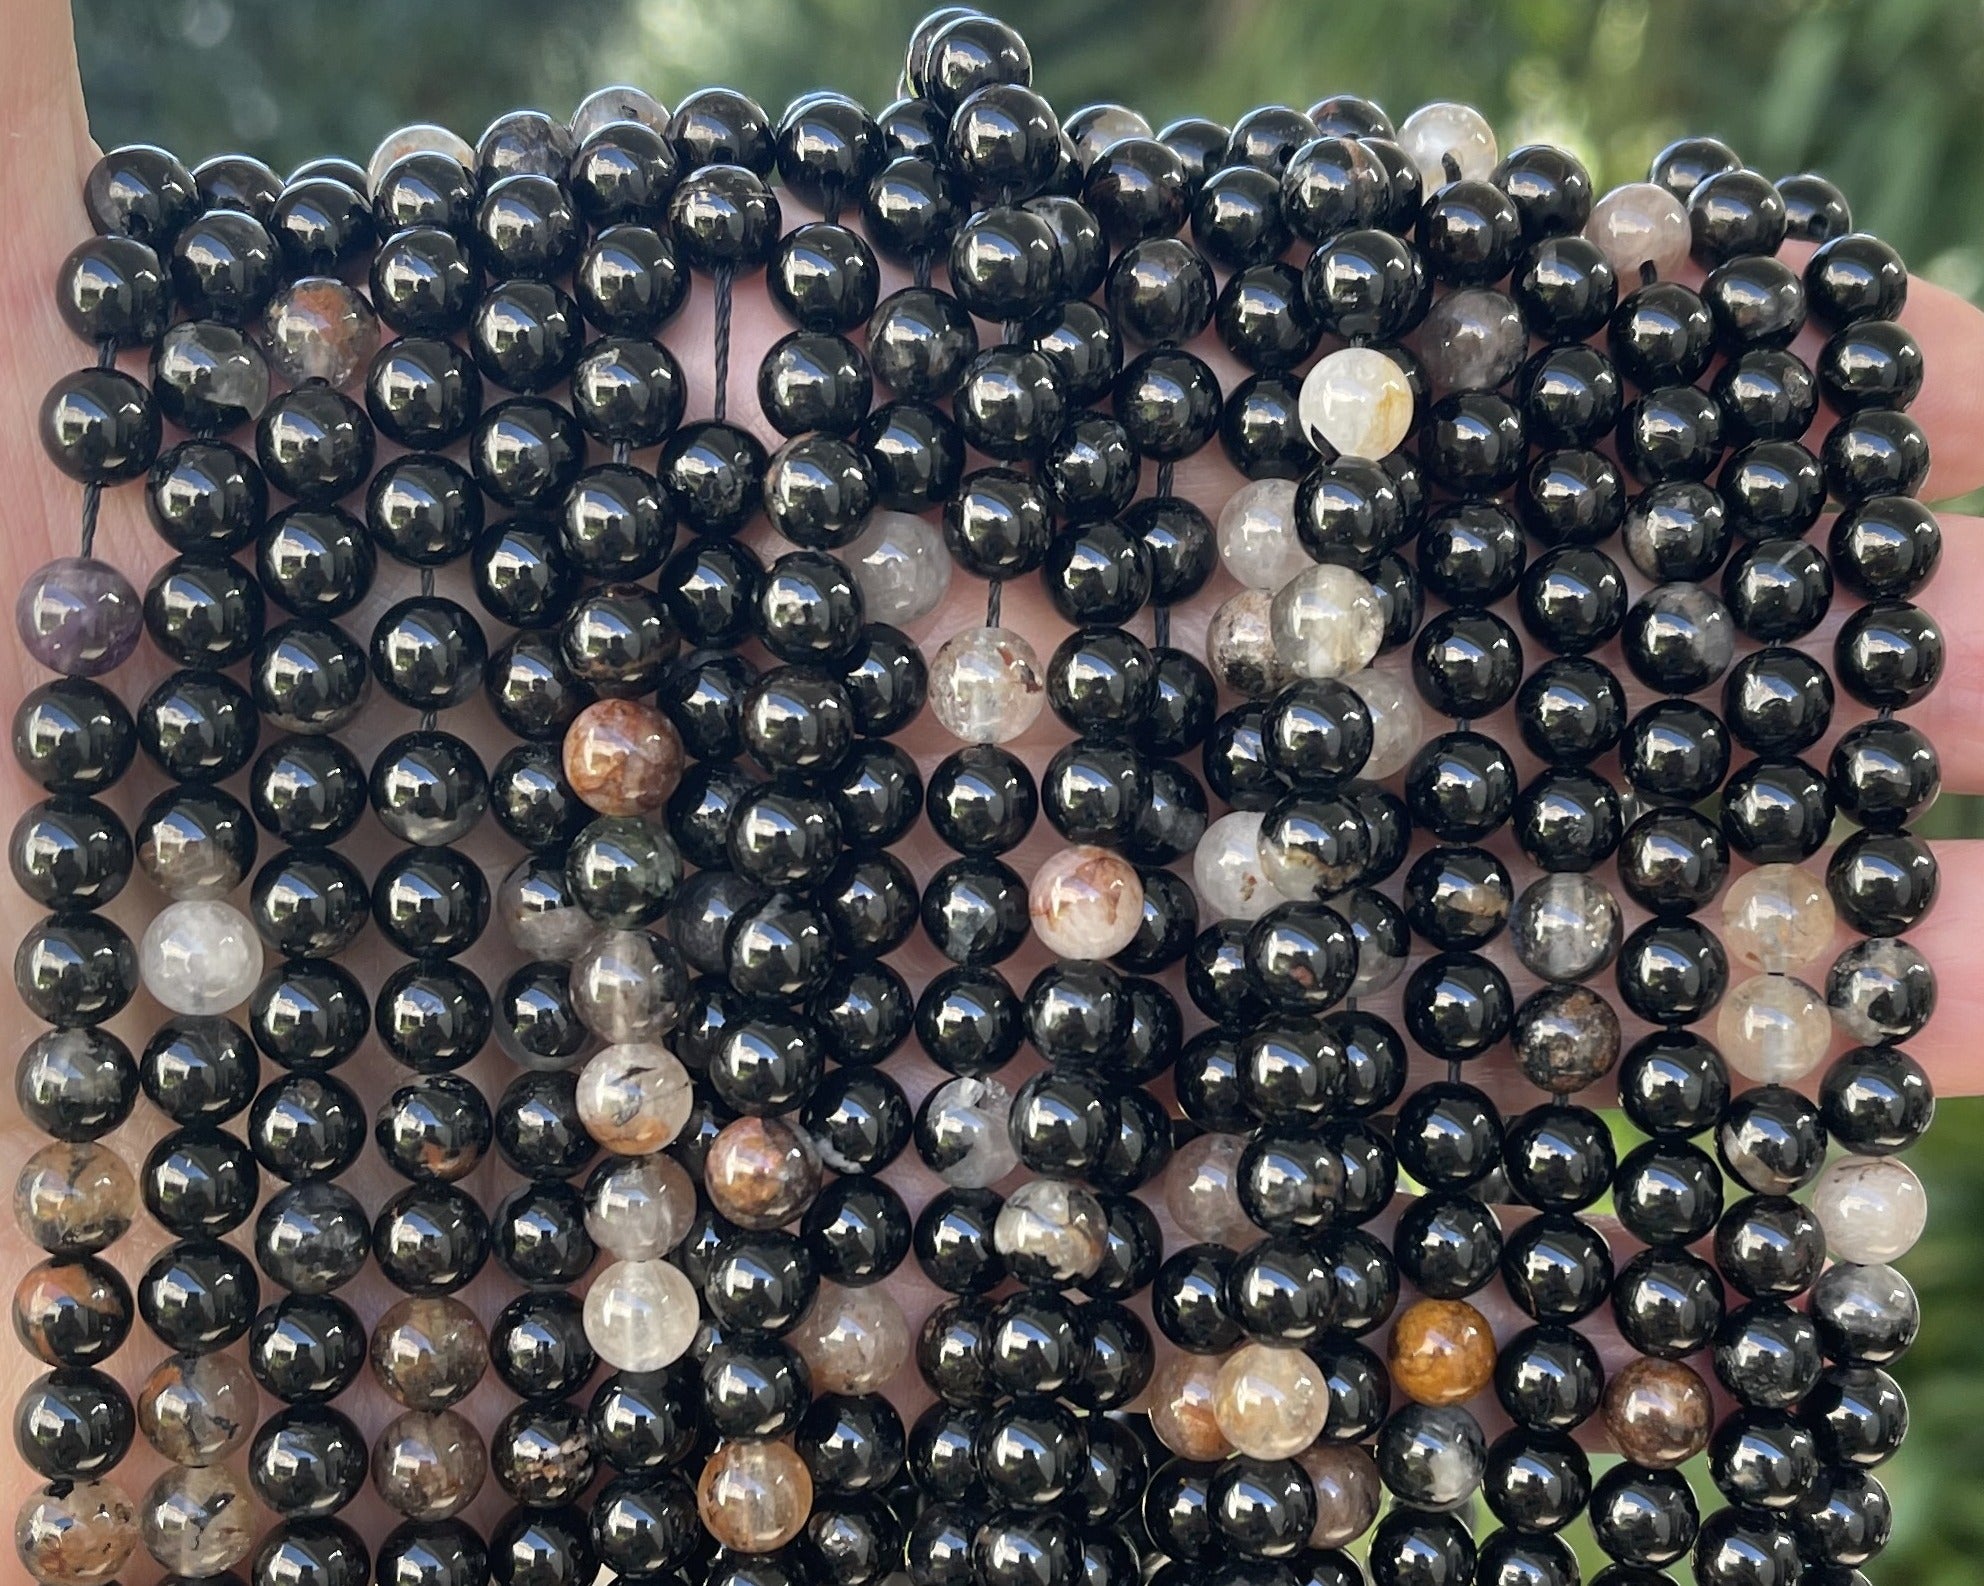 Black Tourmaline in Quartz and Iron Matrix 6mm round natural gemstone beads 15.5" strand